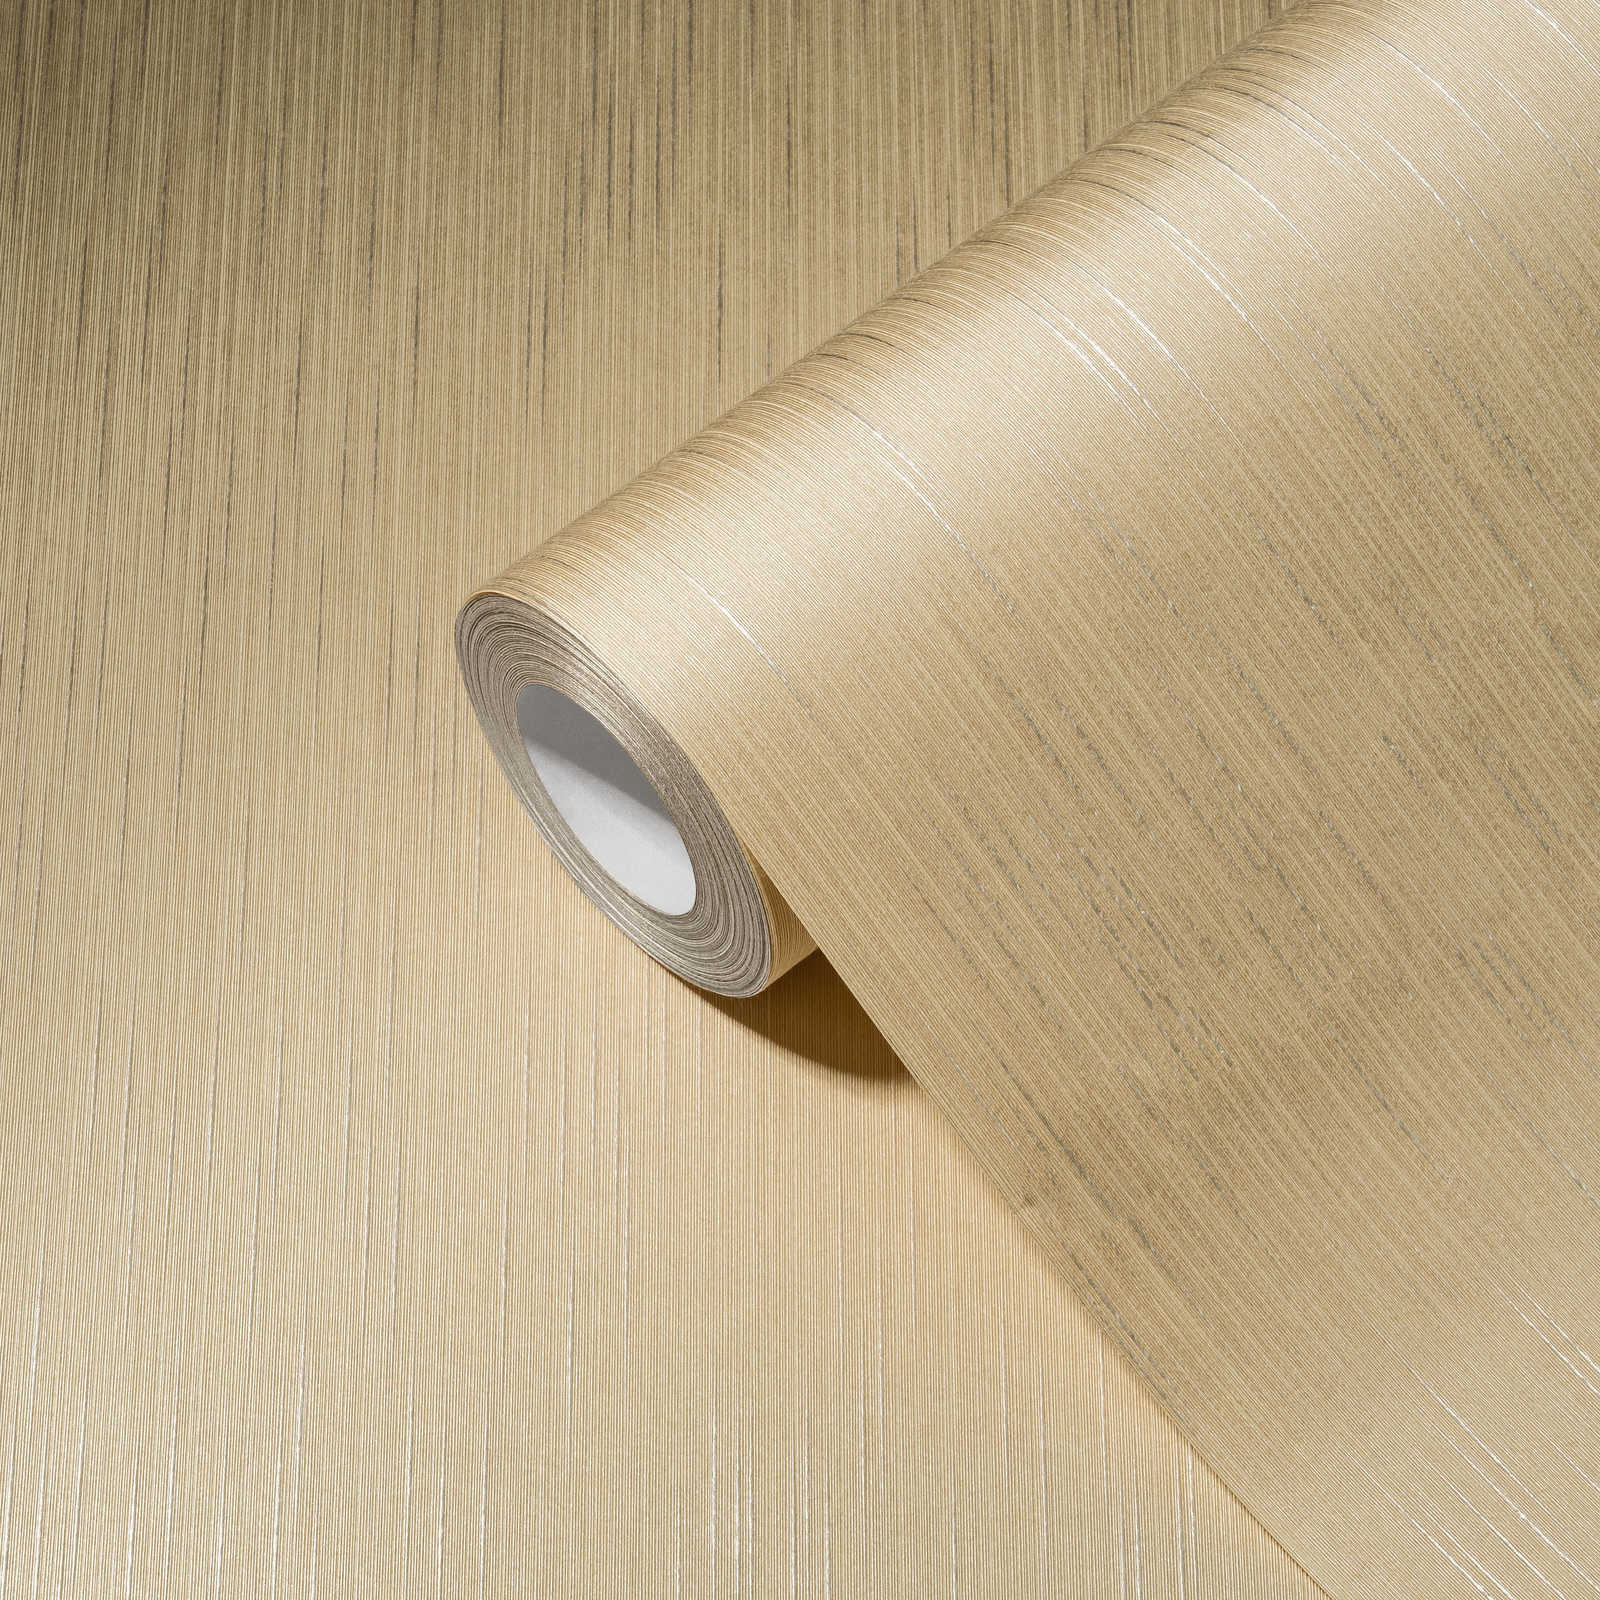             papier peint en papier intissé uni crème avec effet métallique & structure textile
        